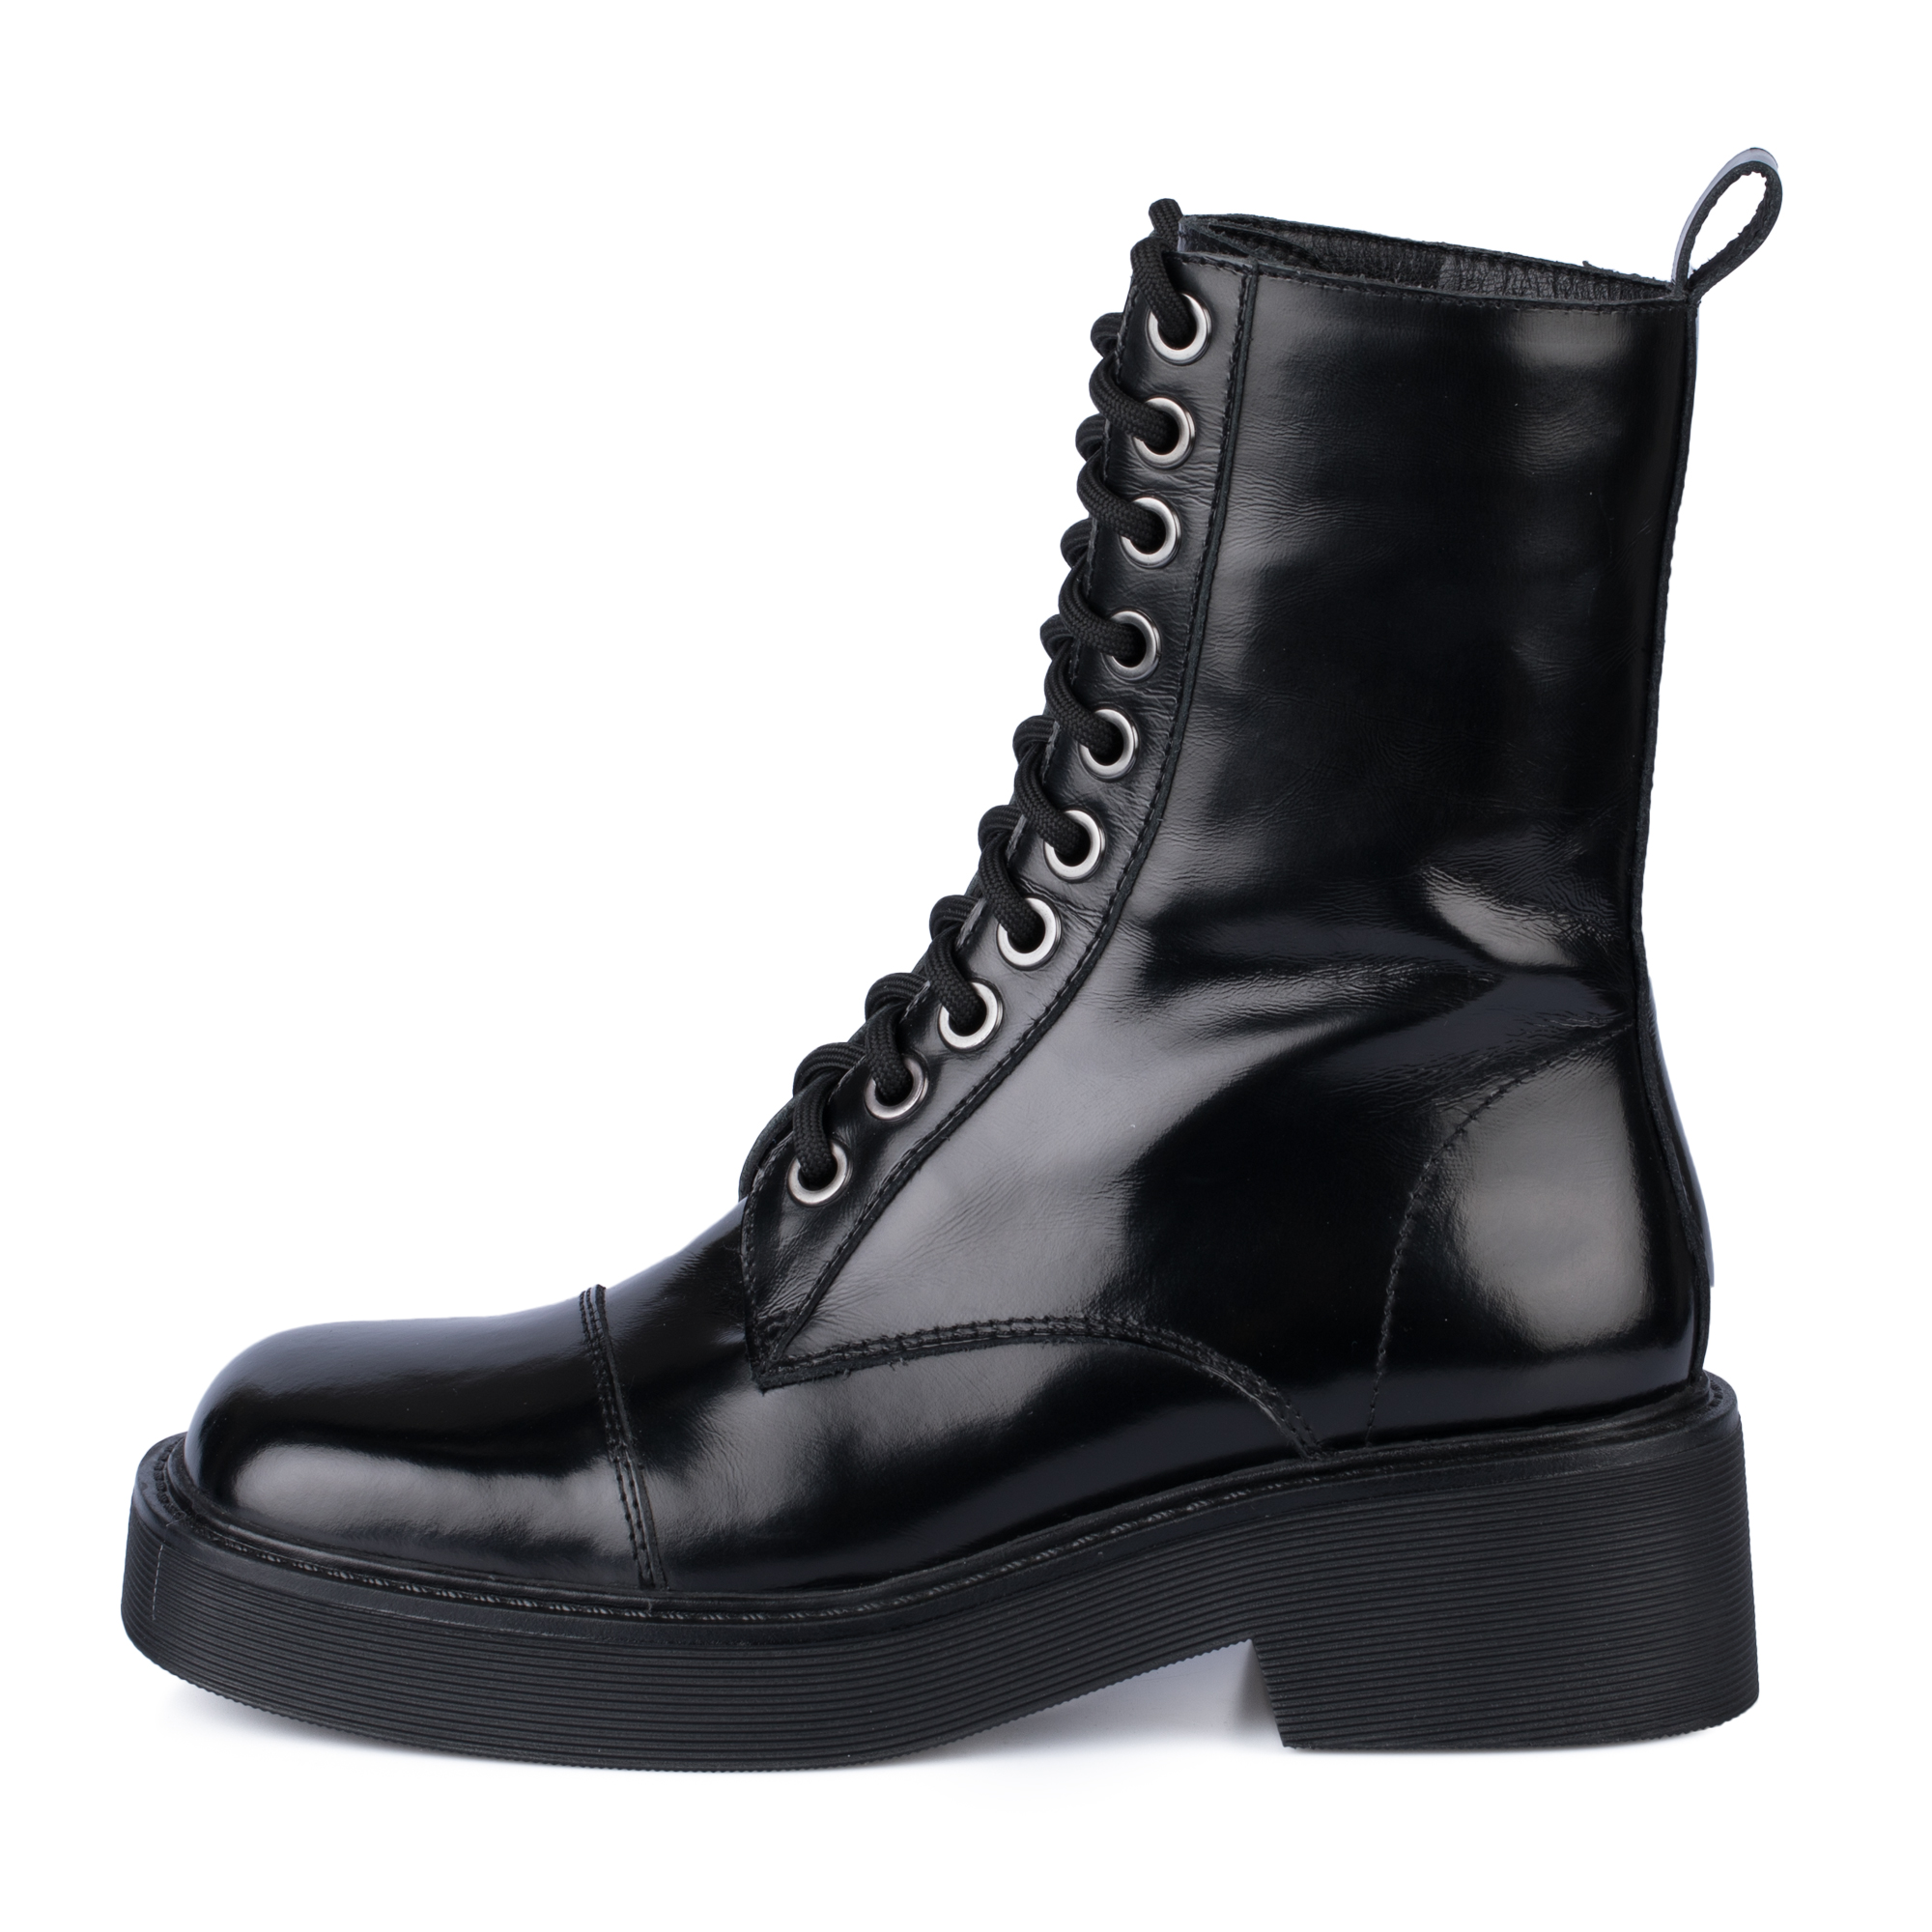 Ботинки Thomas Munz 126-400A-2102, цвет черный, размер 40 - фото 1